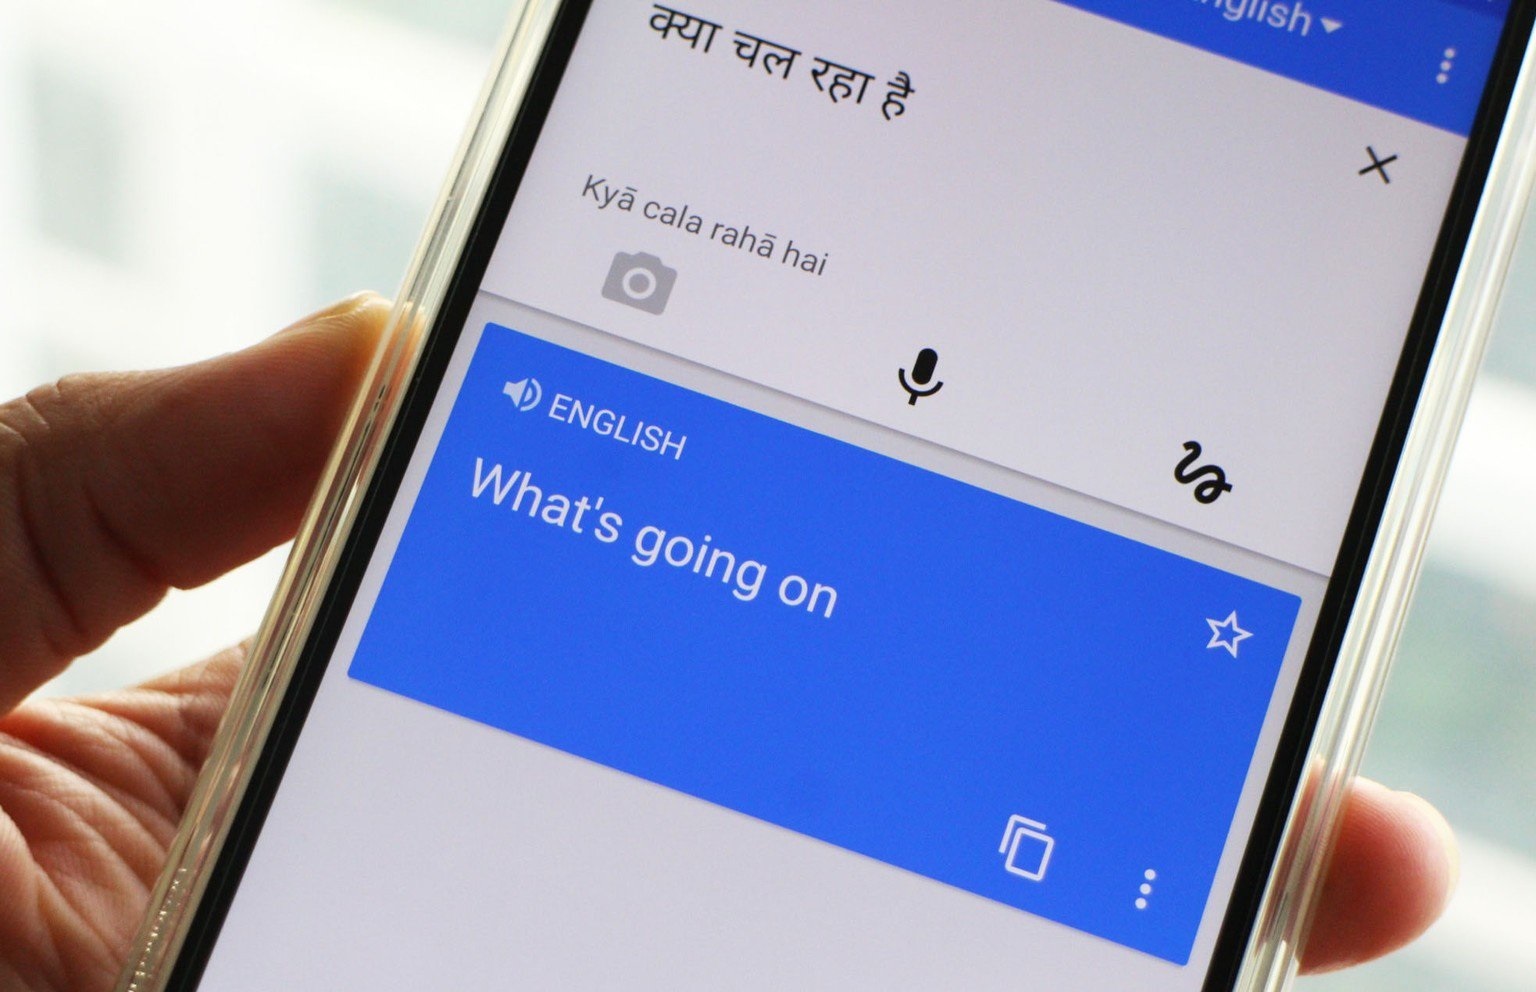 دانلود مترجم گوگل - Google Translate برای گوشی اندروید